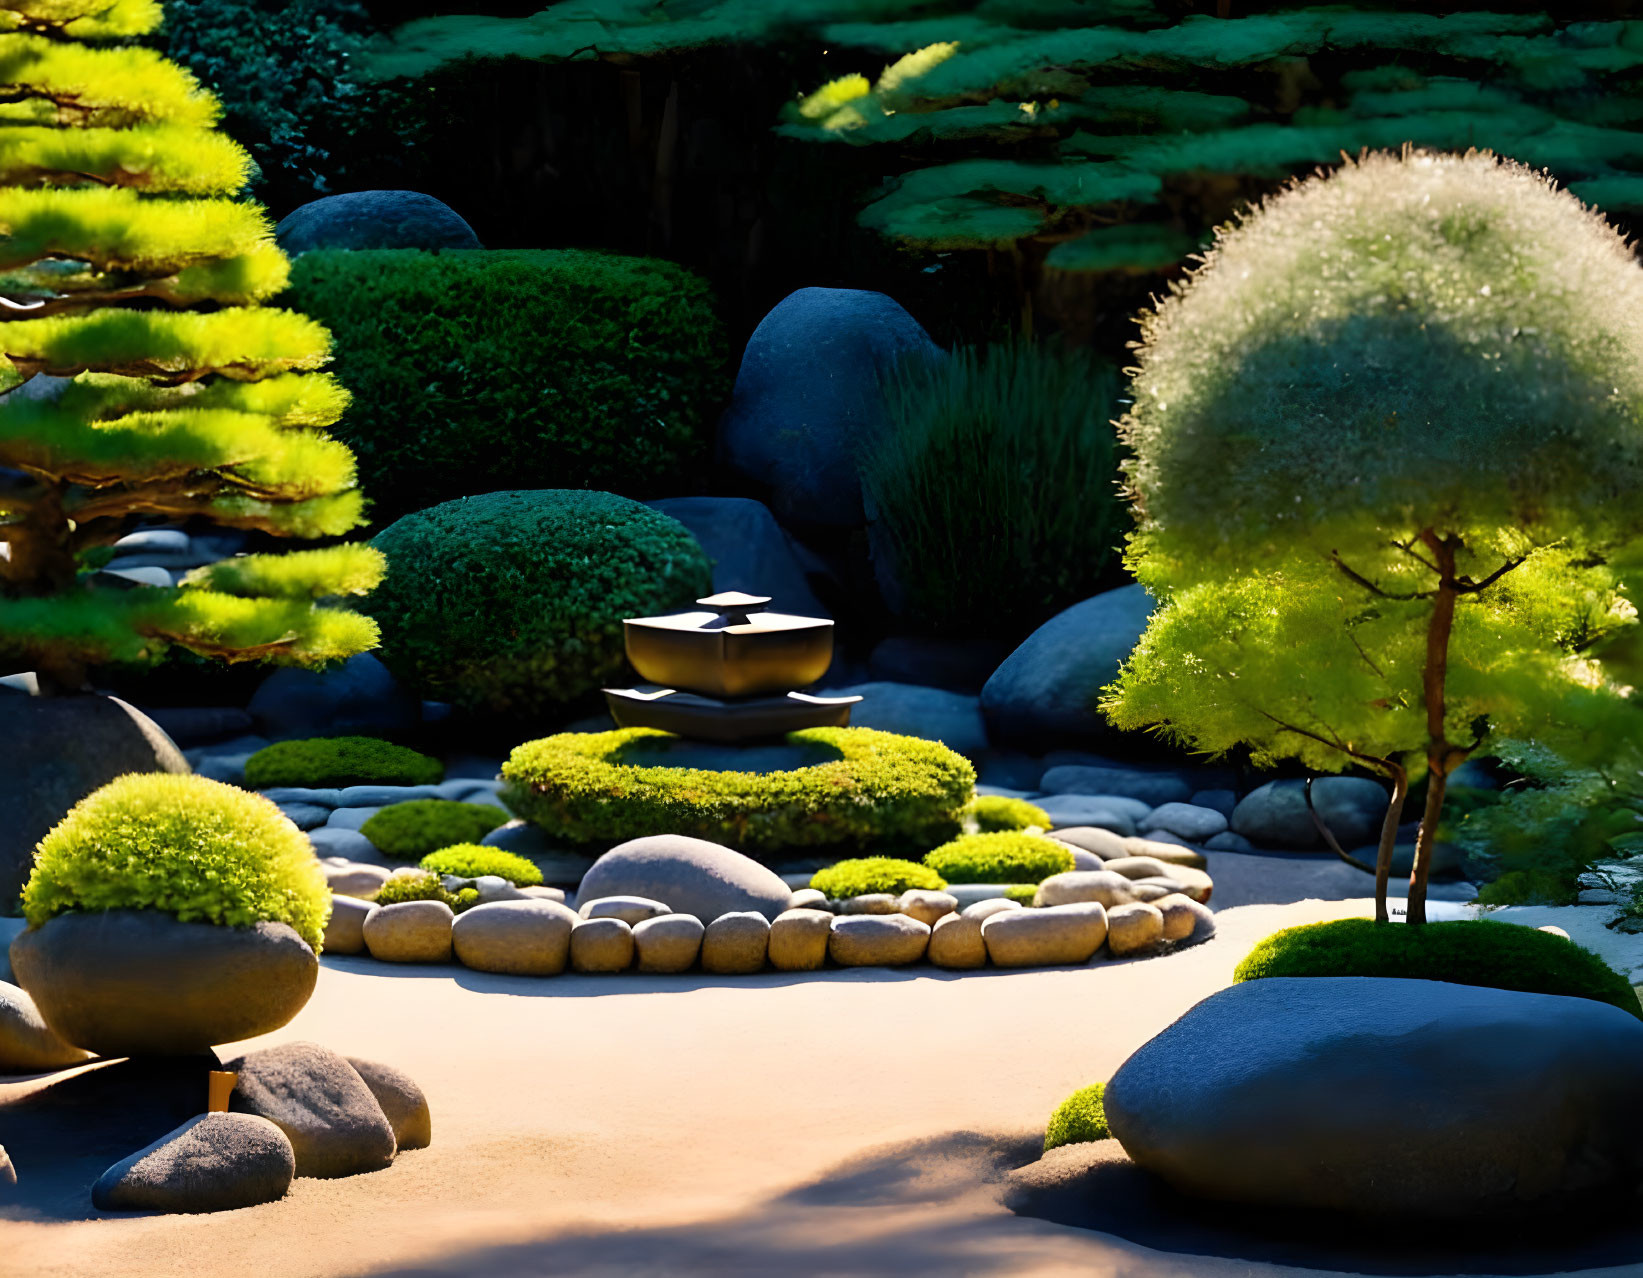 Tranquil Zen: A Japanese Garden Escape